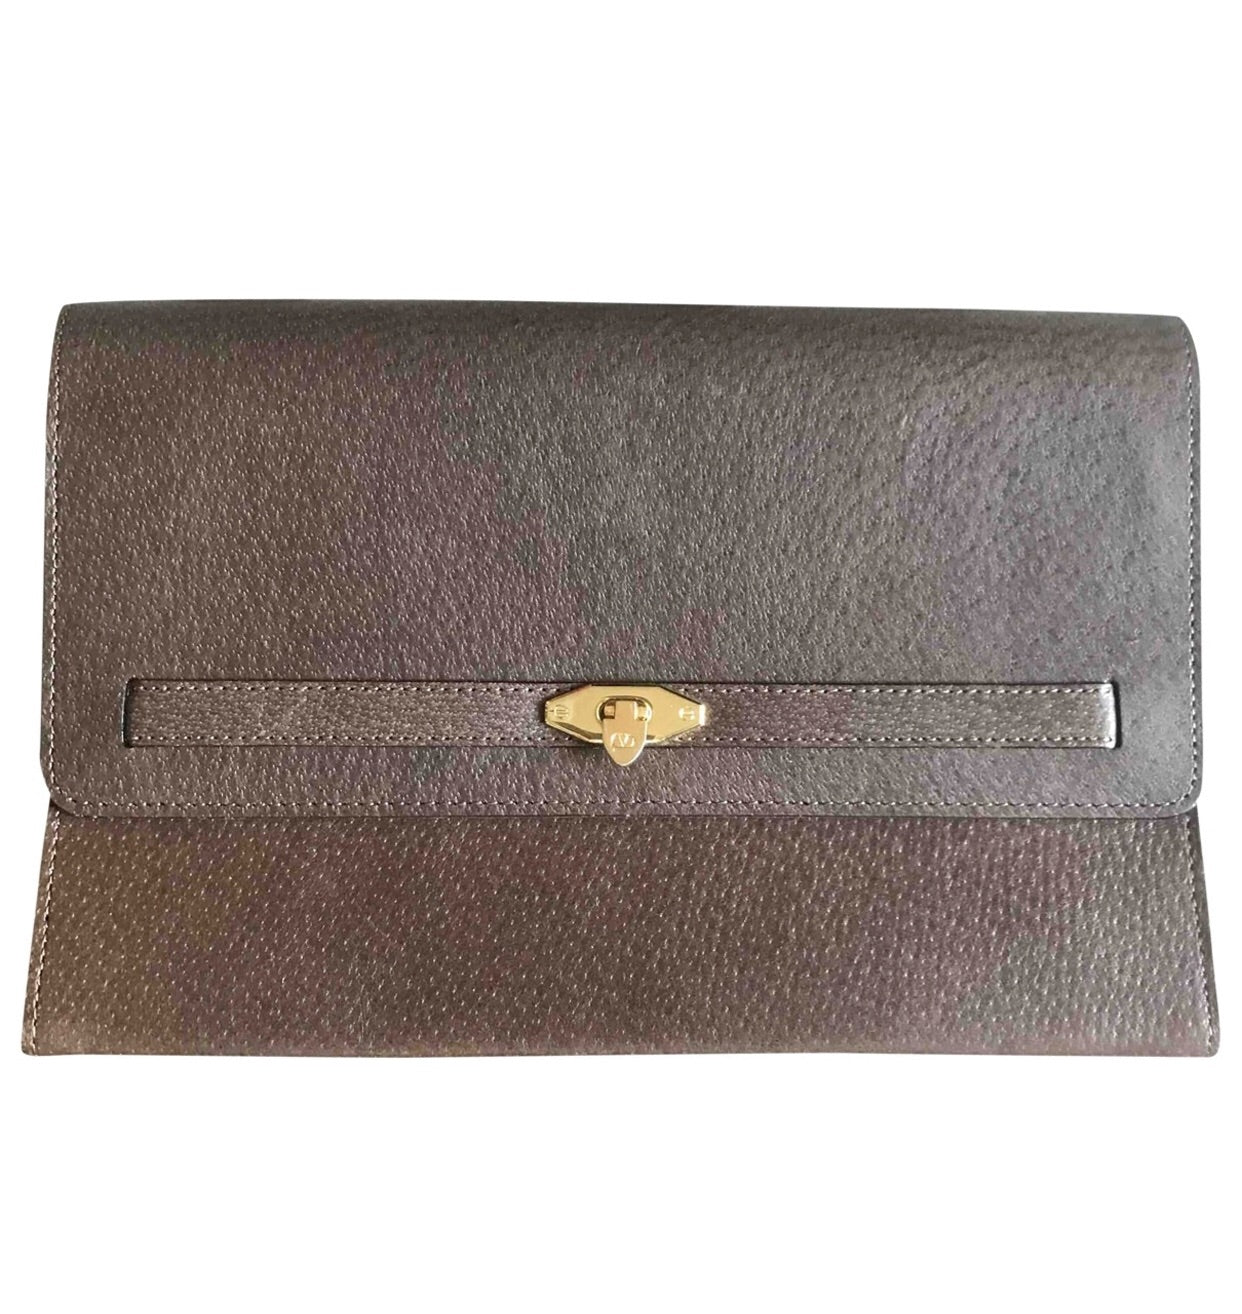 Valentino Bags LIUTO - Handbag - multicolor/brown - Zalando.co.uk